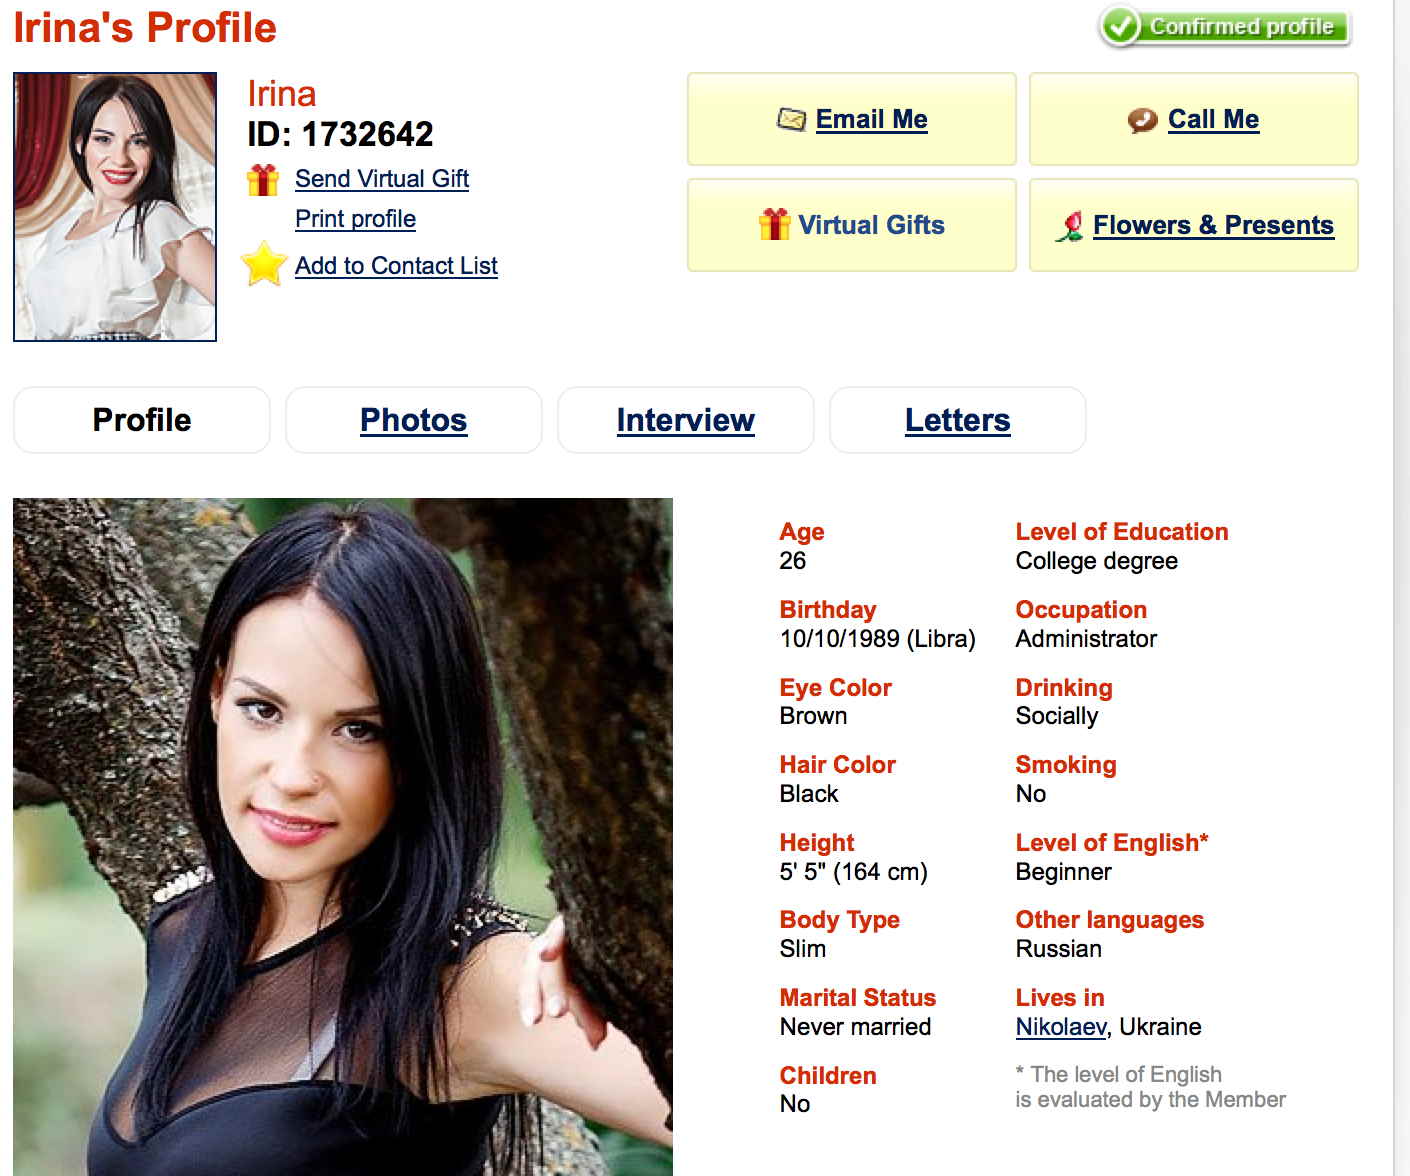 Irina afraud profile.jpg